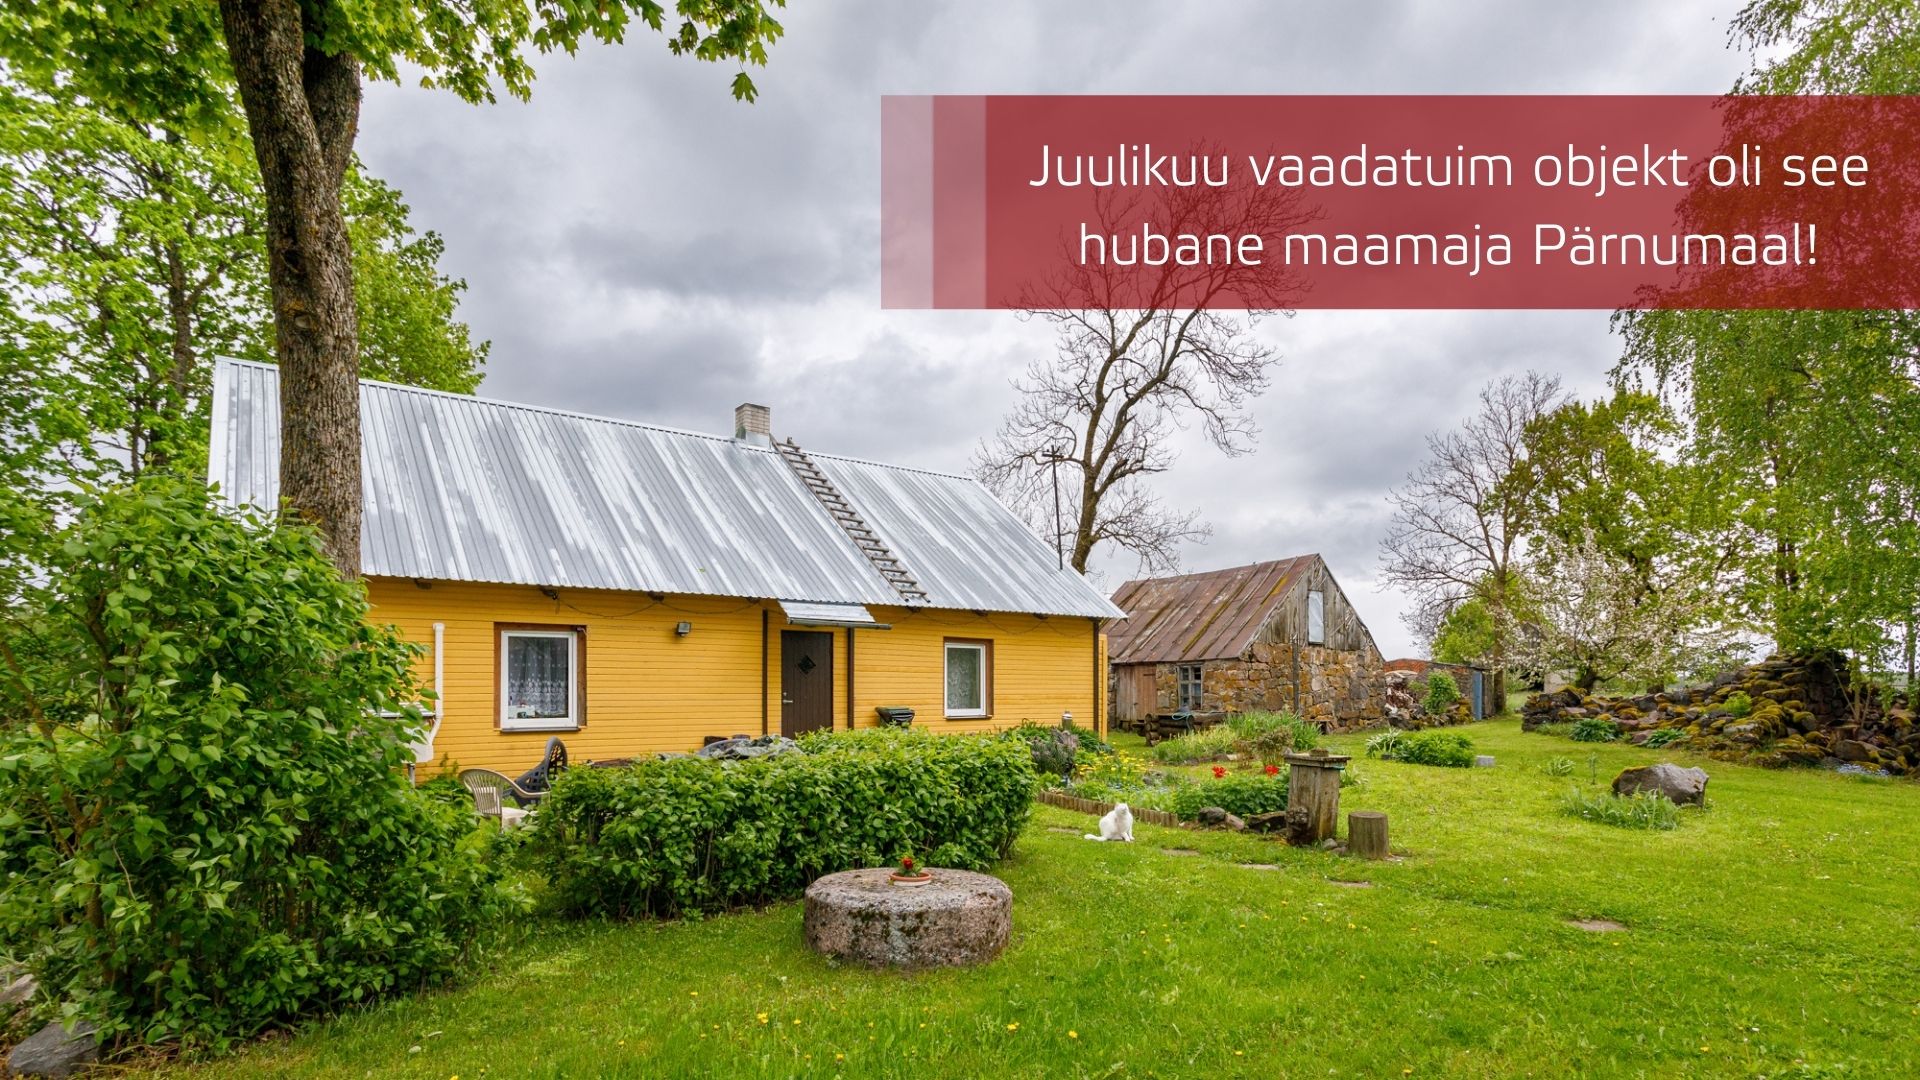 Juulikuu vaadatuimad objektid - põnevaim pakkumine oli maamaja Pärnumaal